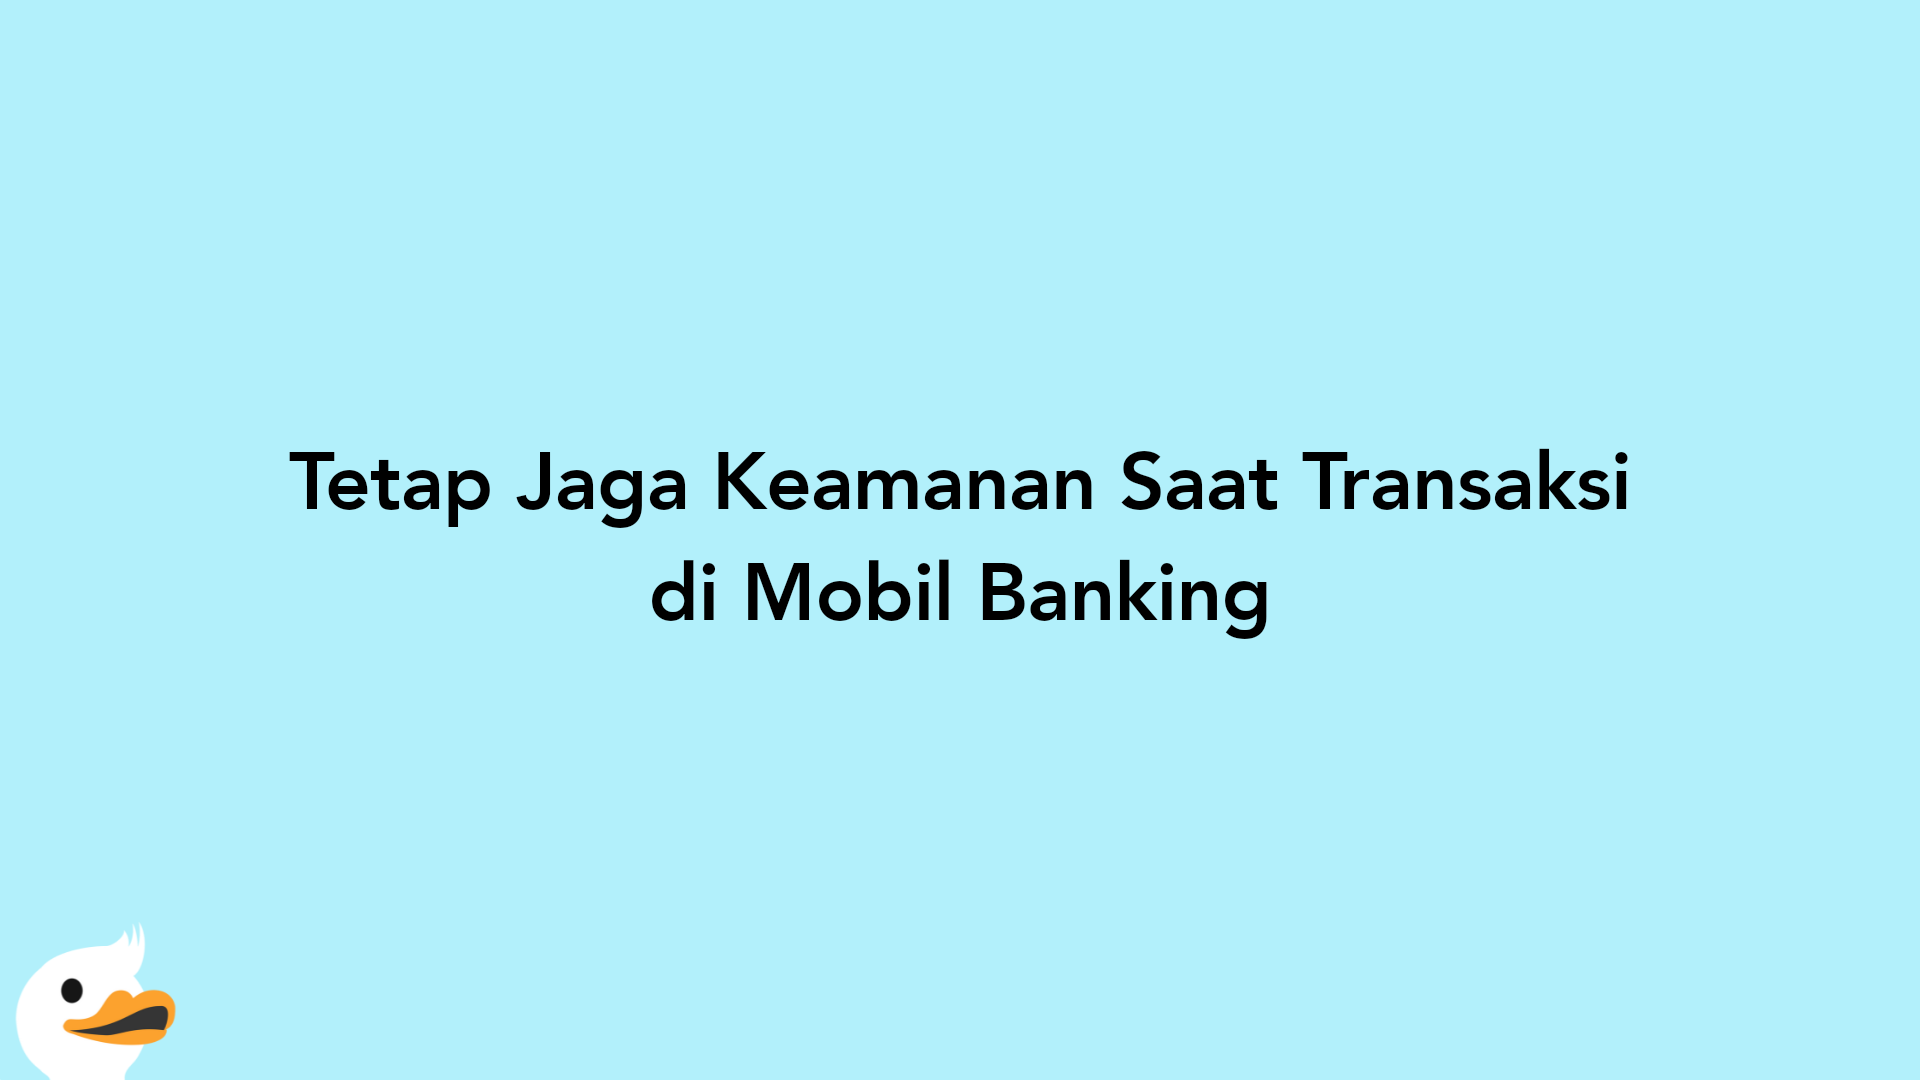 Tetap Jaga Keamanan Saat Transaksi di Mobil Banking